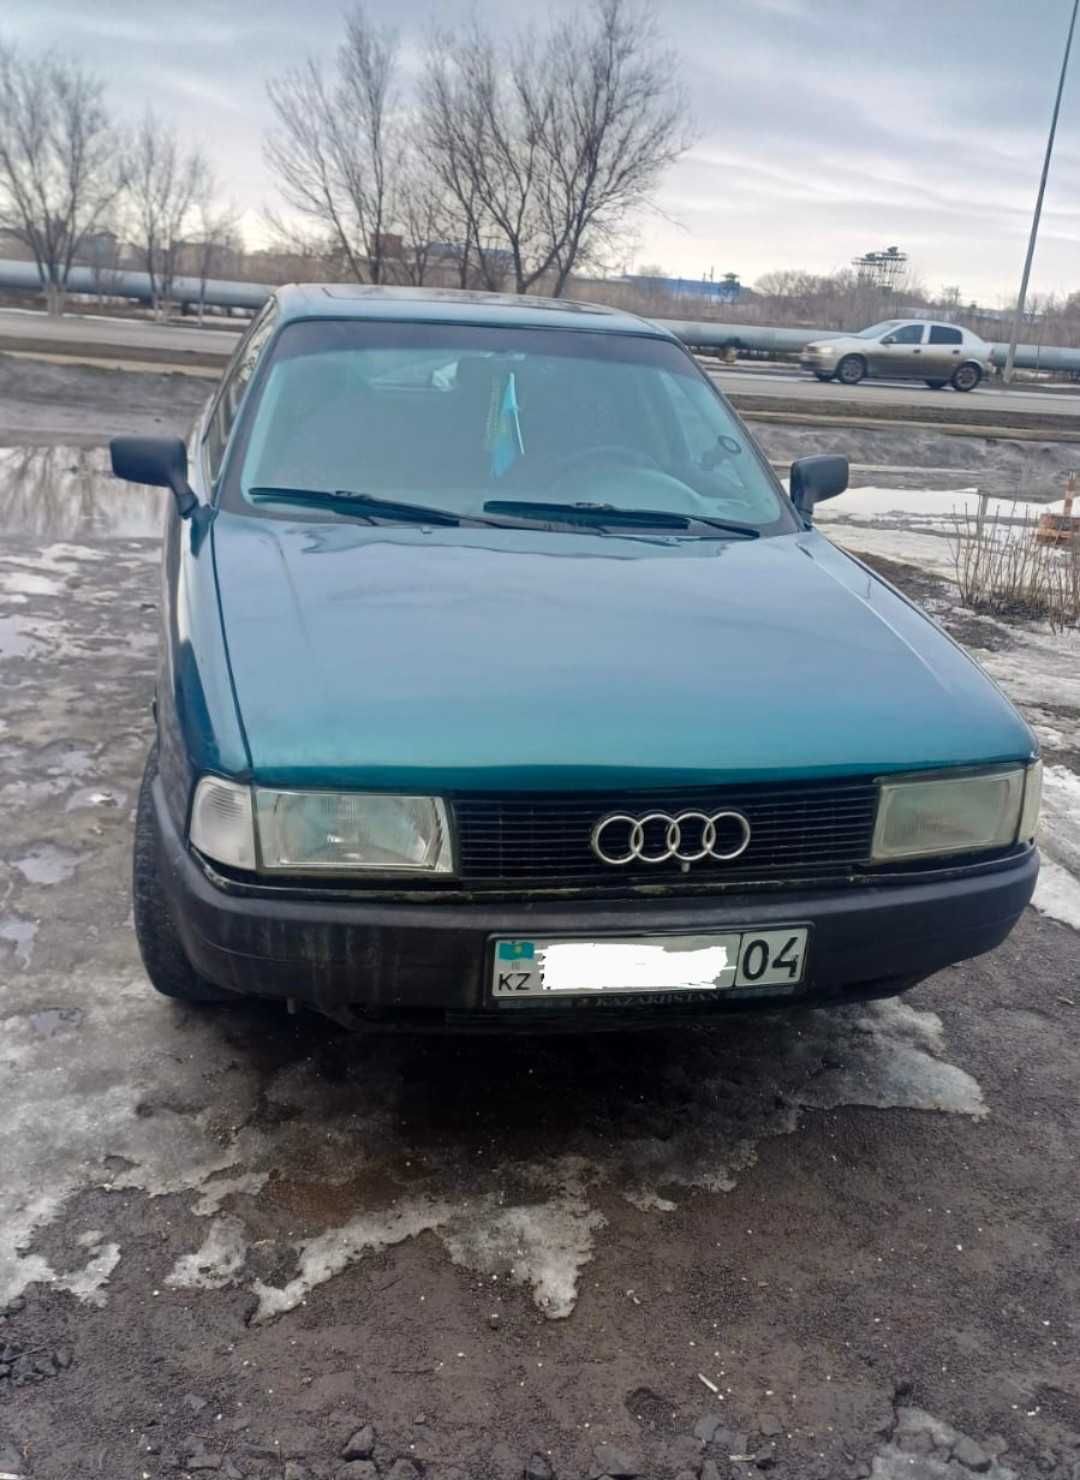 Audi 80Б3 в хорошем состояние